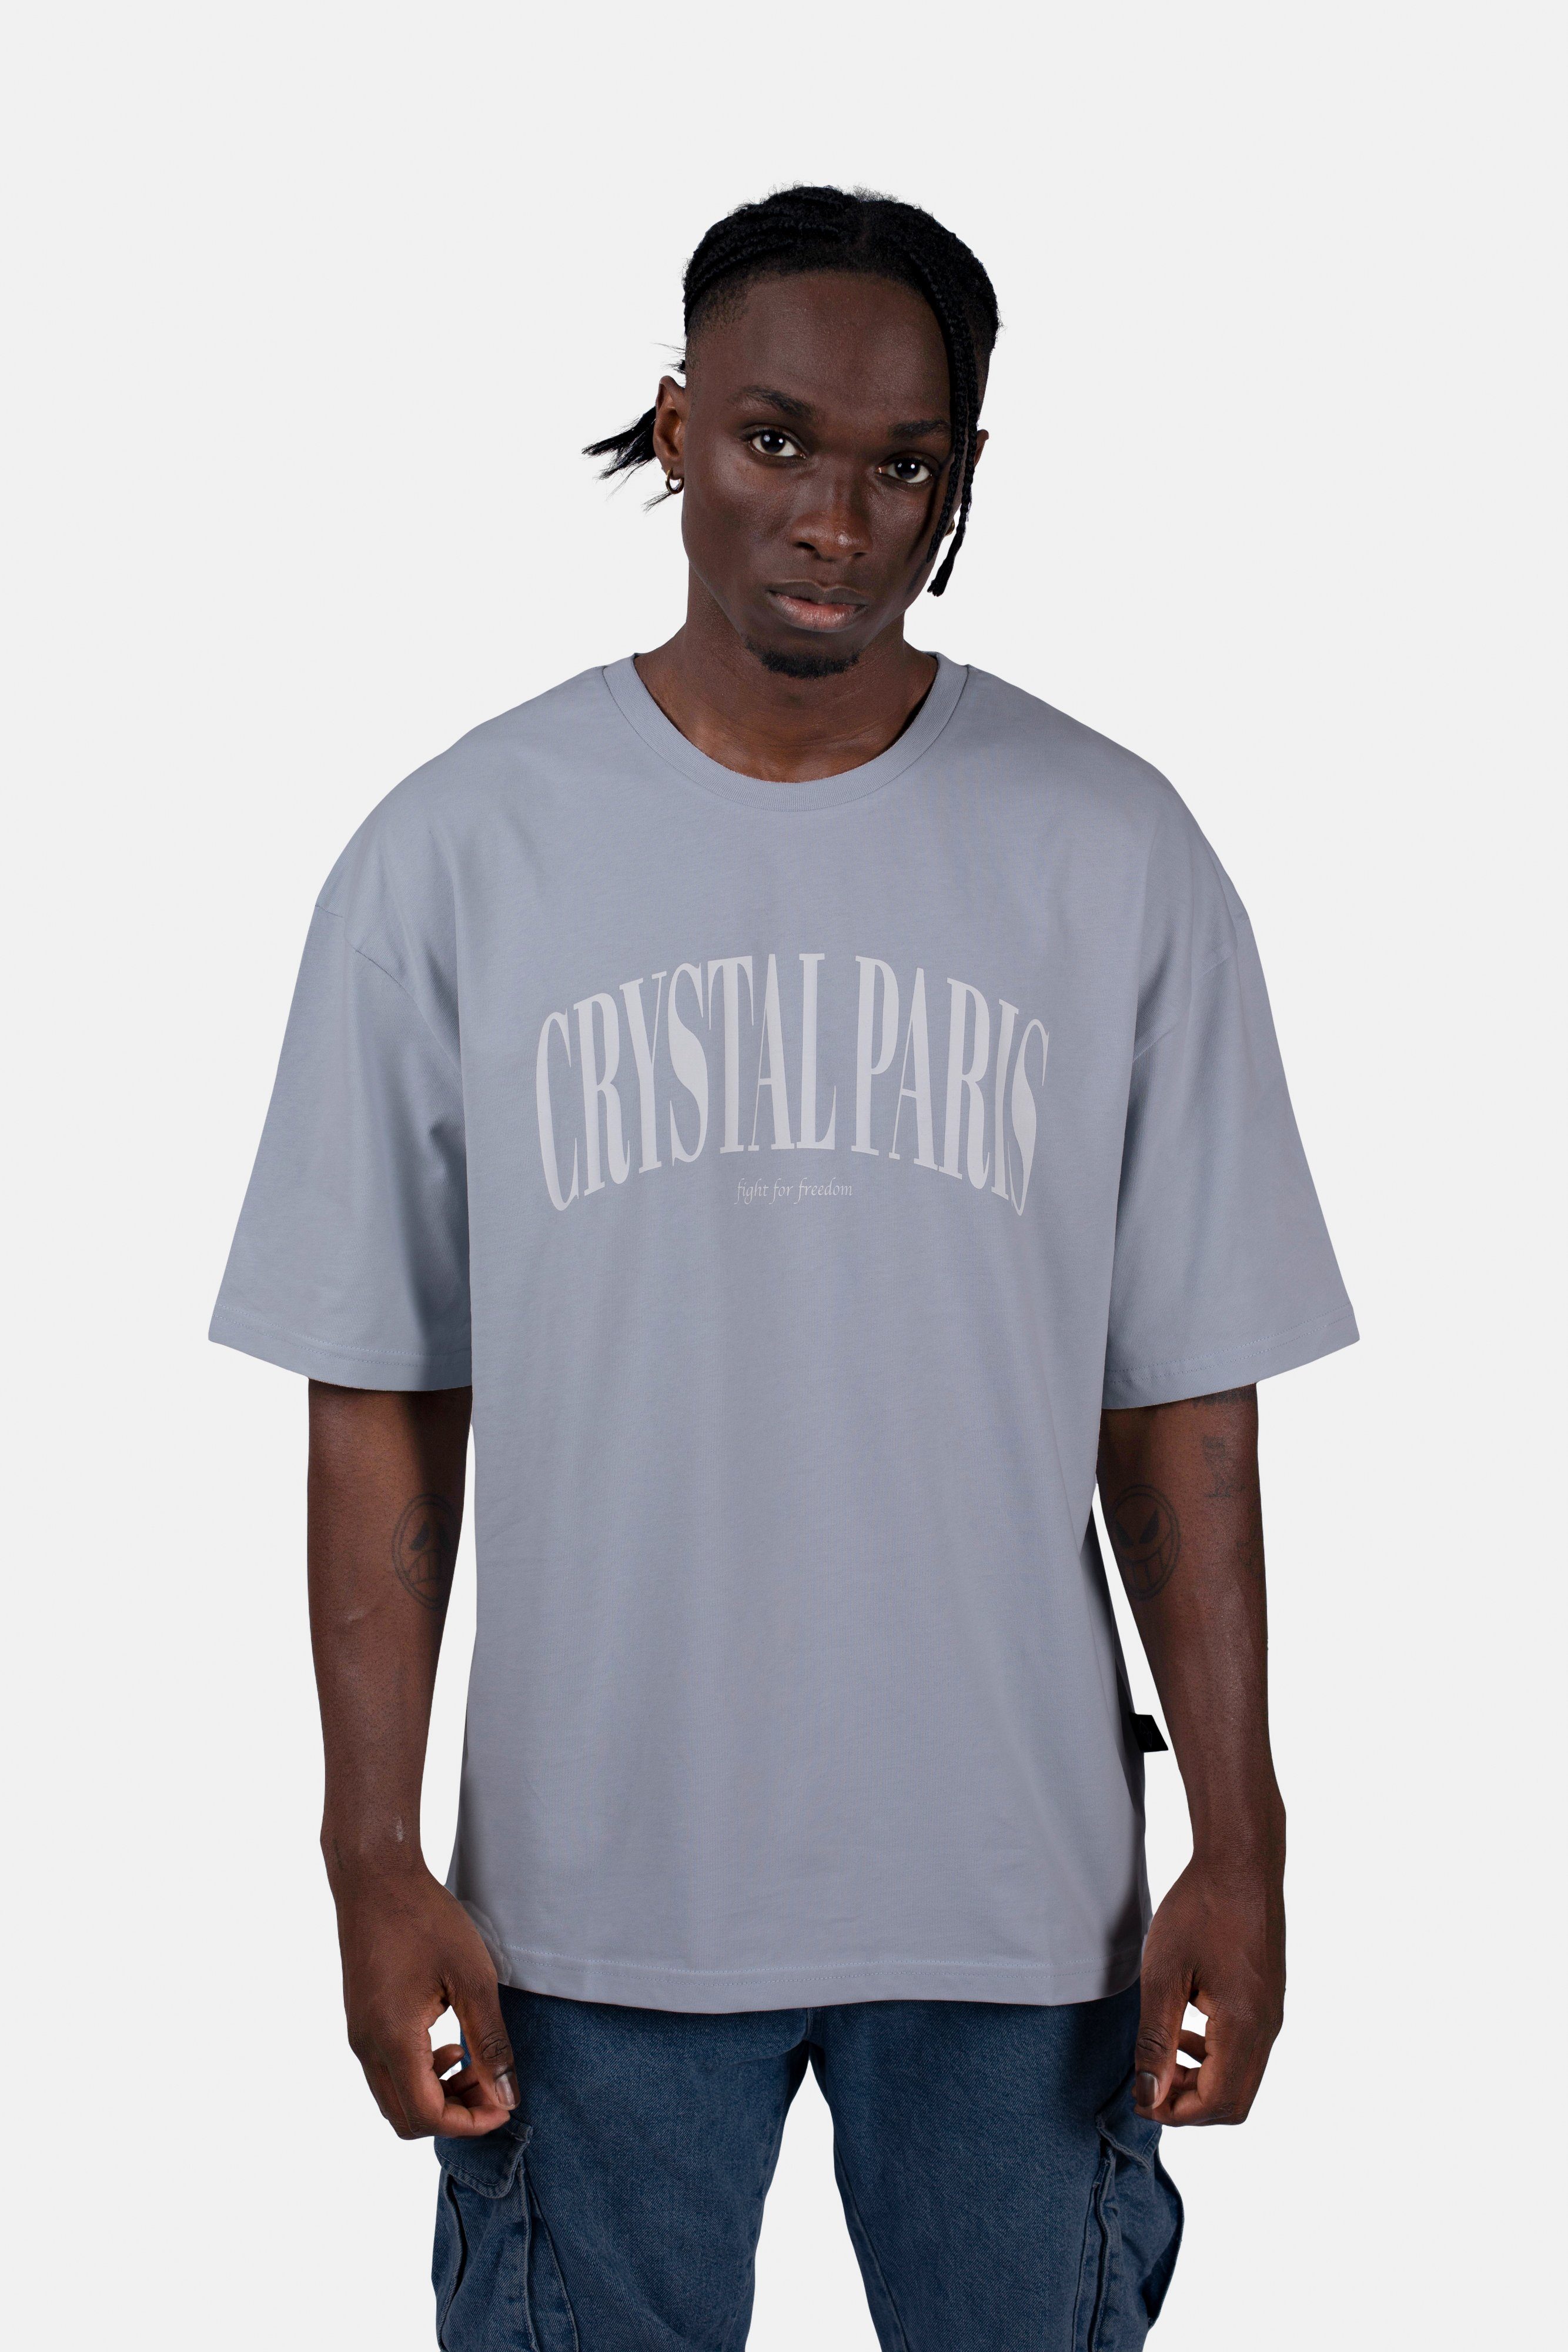 Crystal Ice Paris Classic Oversize-Shirt Arctic